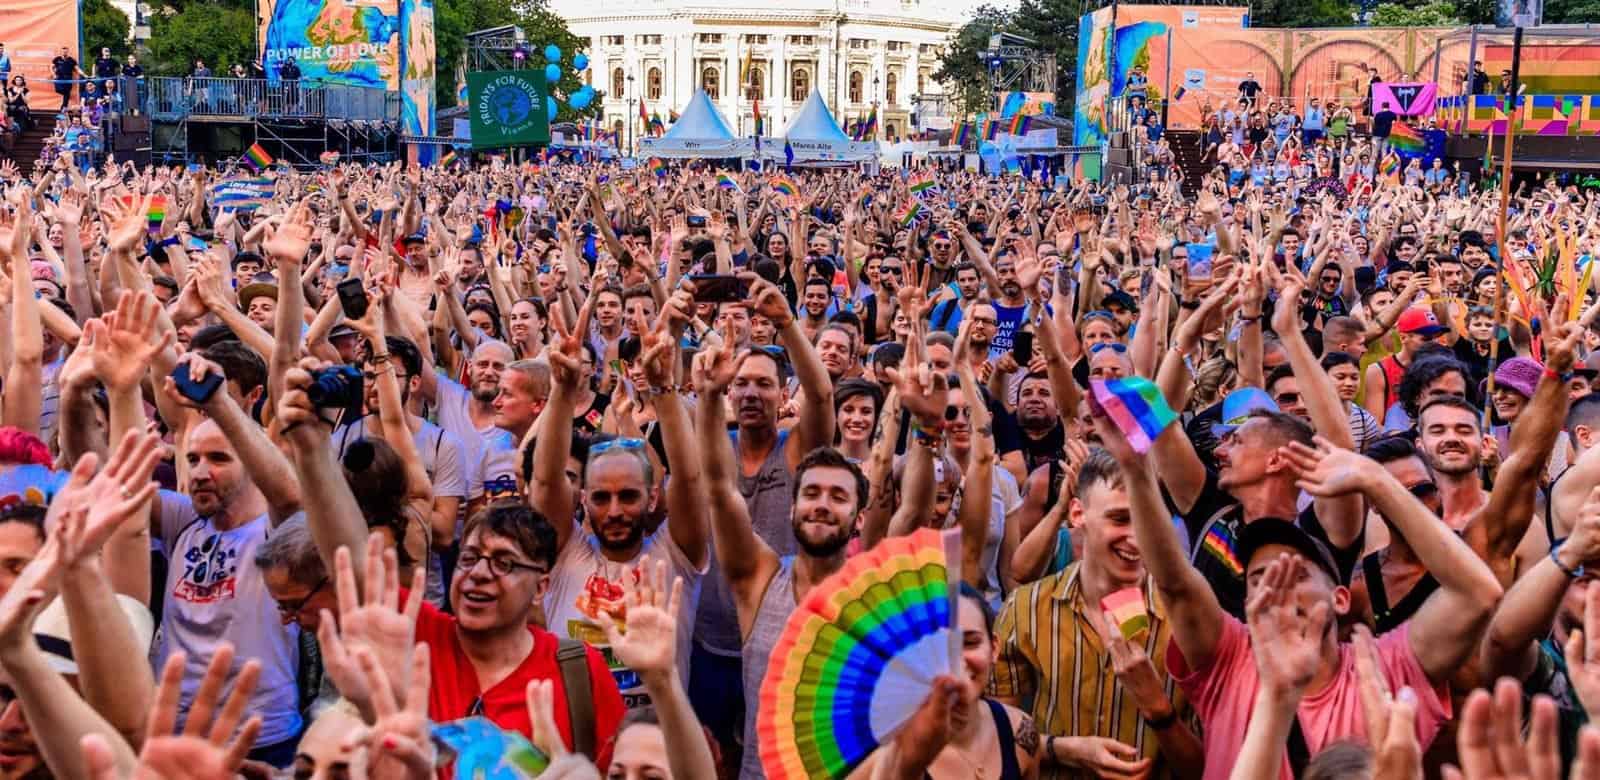 Viele Menschen feiern in einer großen Maße die LGBTIQ Community an der Vienna Pride 2019